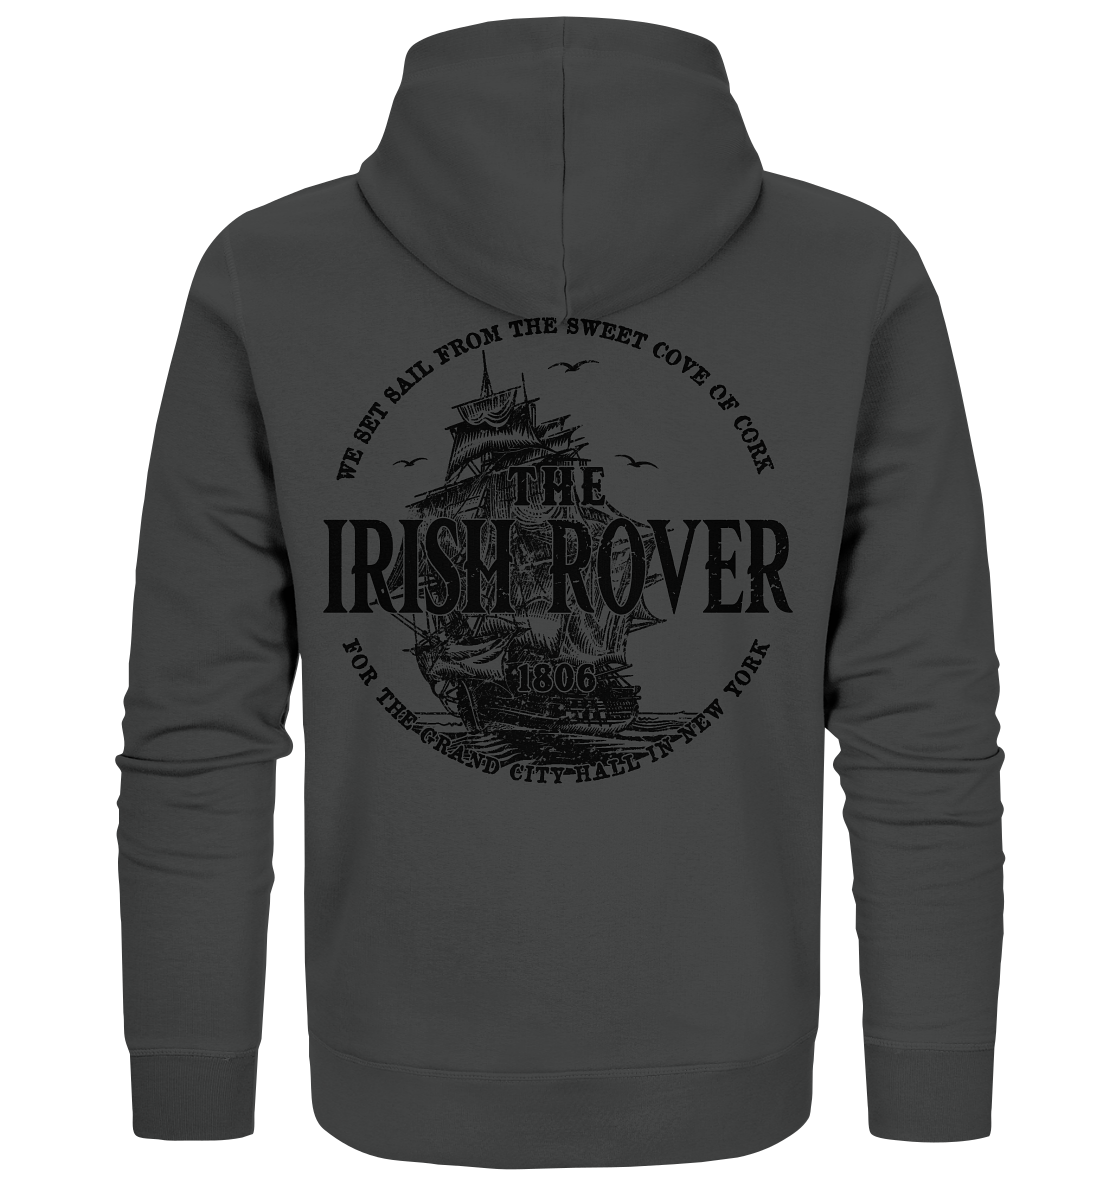 "The Irish Rover" - Organic Zipper